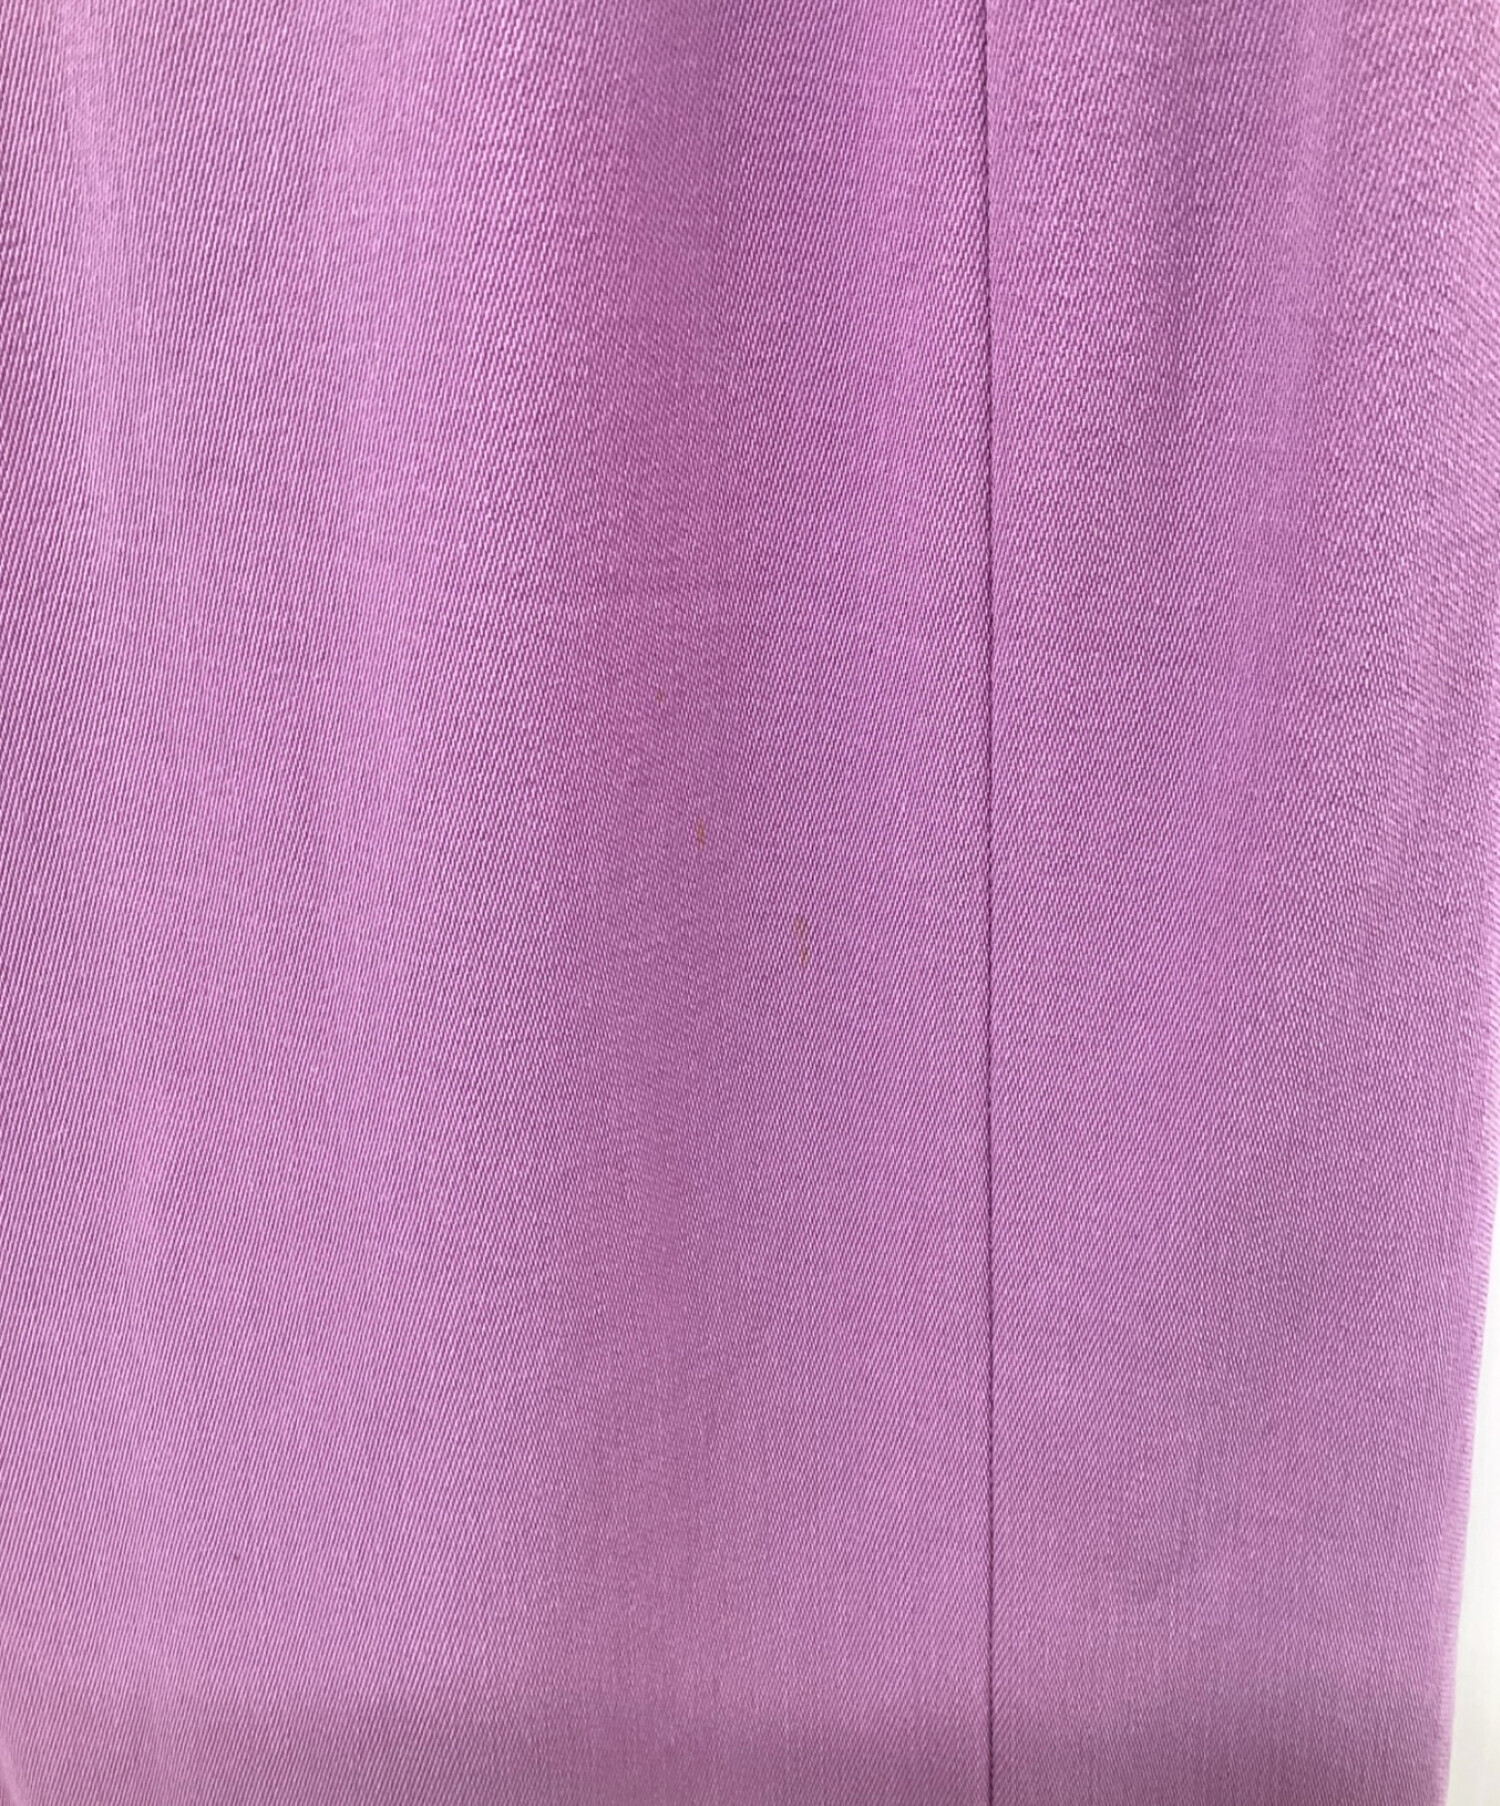 CELINE (セリーヌ) ロゴプレートメタルチェーンスカート パープル サイズ:SIZE 38